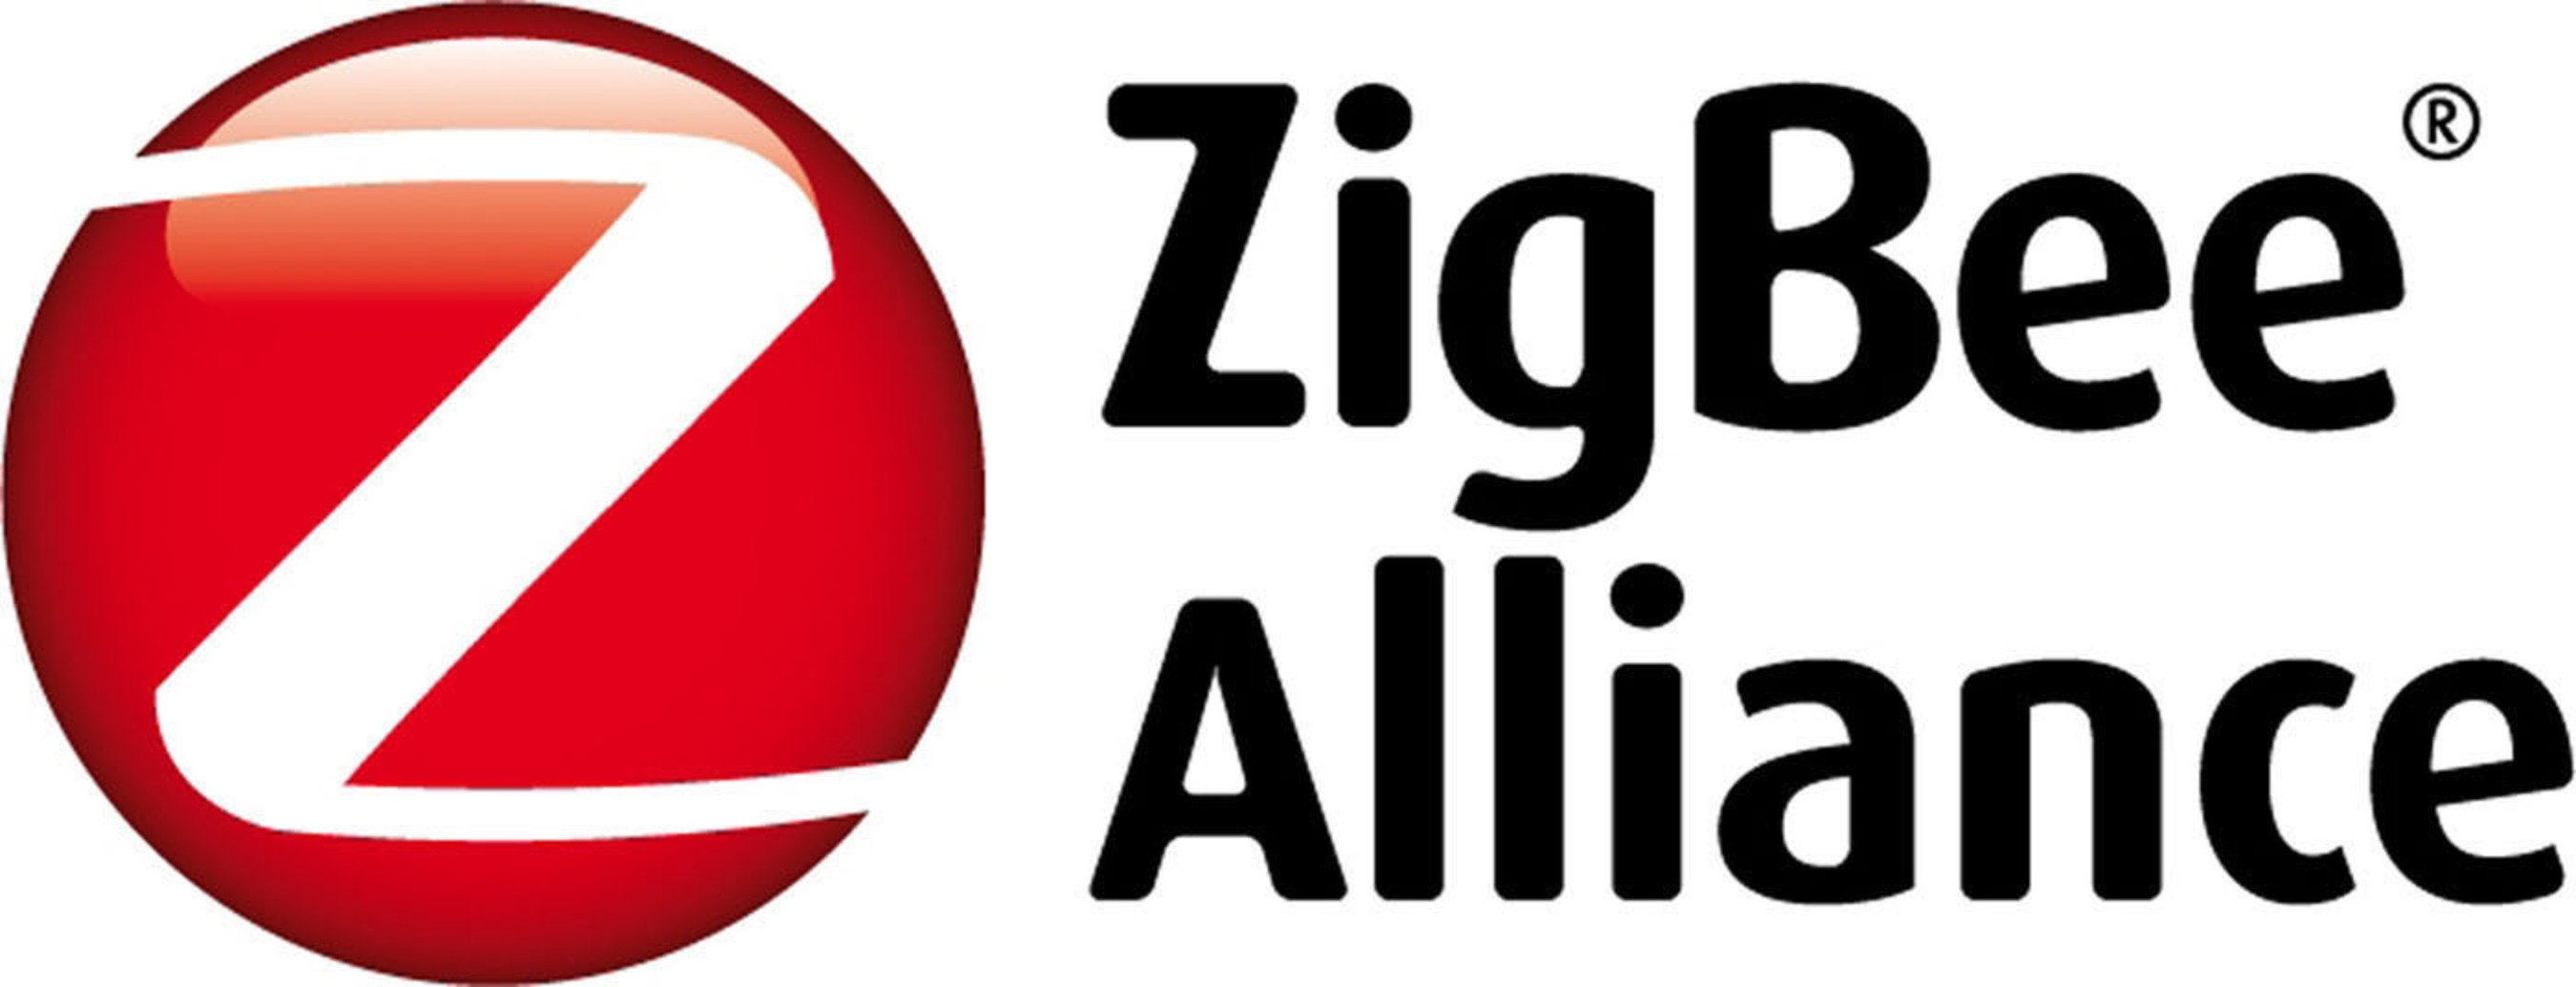 ZigBee Alliance Logo. (PRNewsFoto/ZigBee Alliance) (PRNewsFoto/)